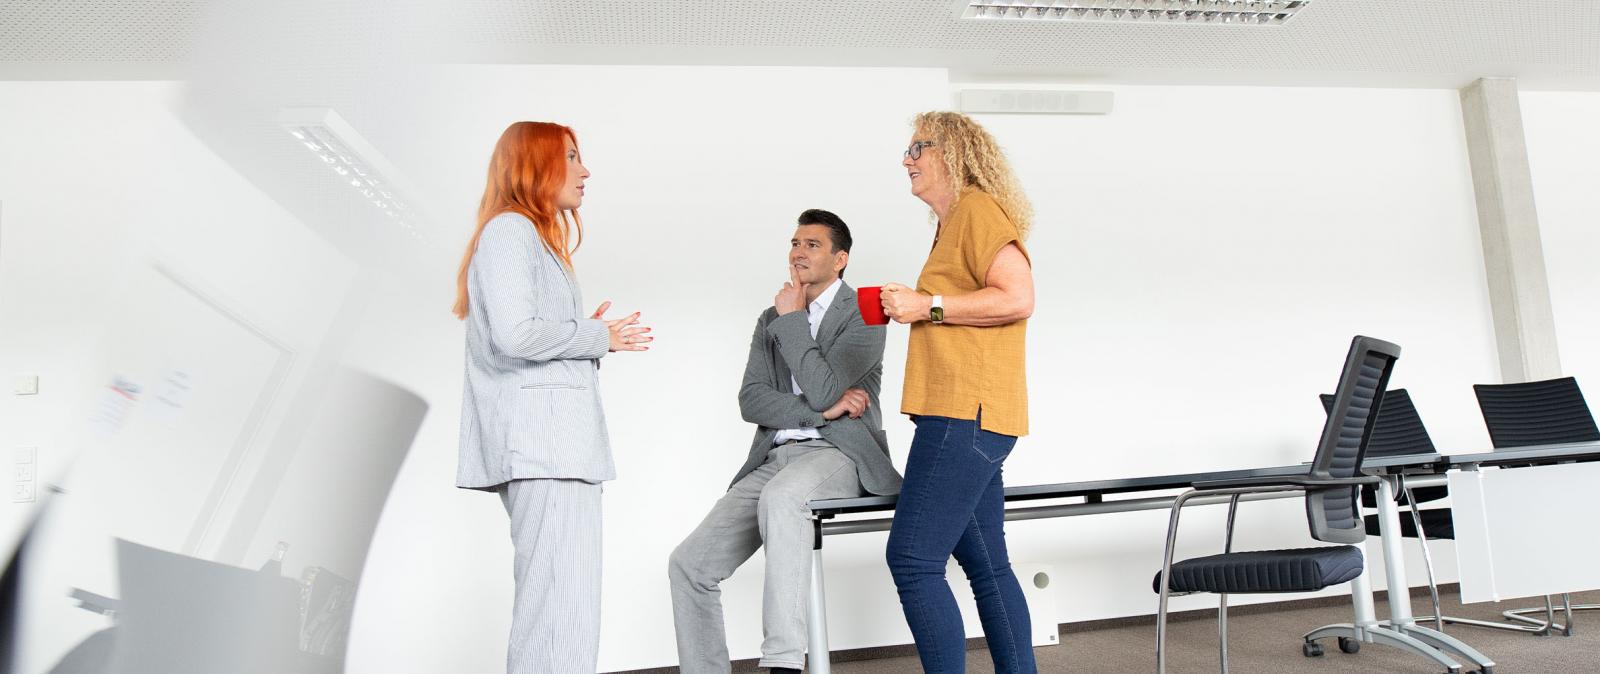 Gesprächssituation in einem Besprechungsraum, zwei Frauen und ein Mann